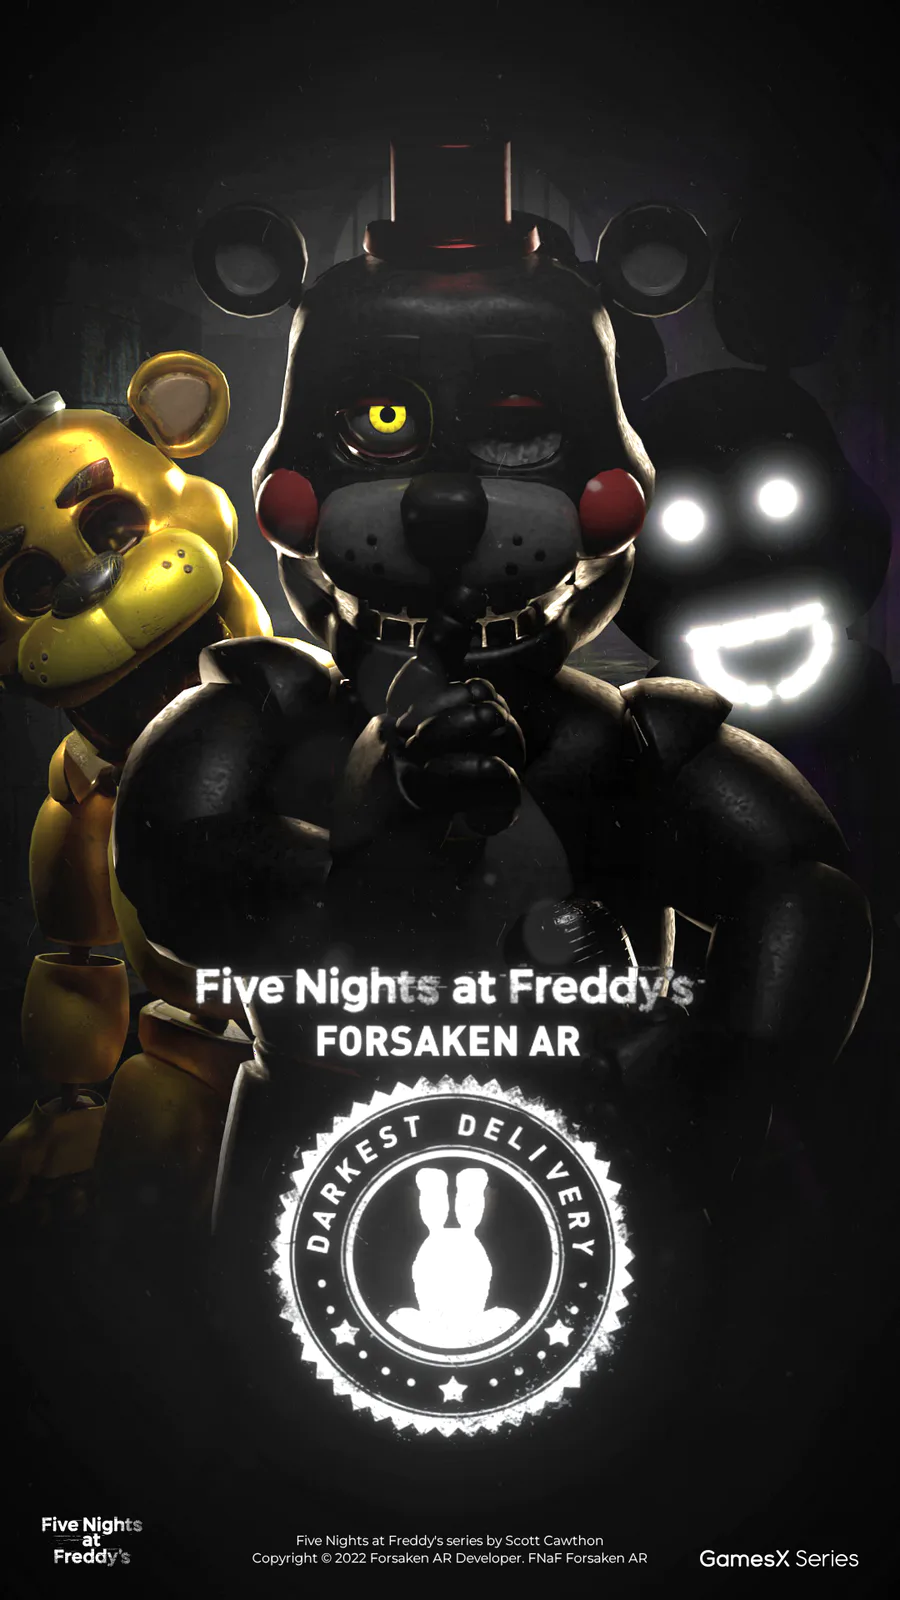 GamesX Series on Game Jolt: Five Nights at Freddy's Forsaken AR: Darkest  Delivery (Mobile) Vide